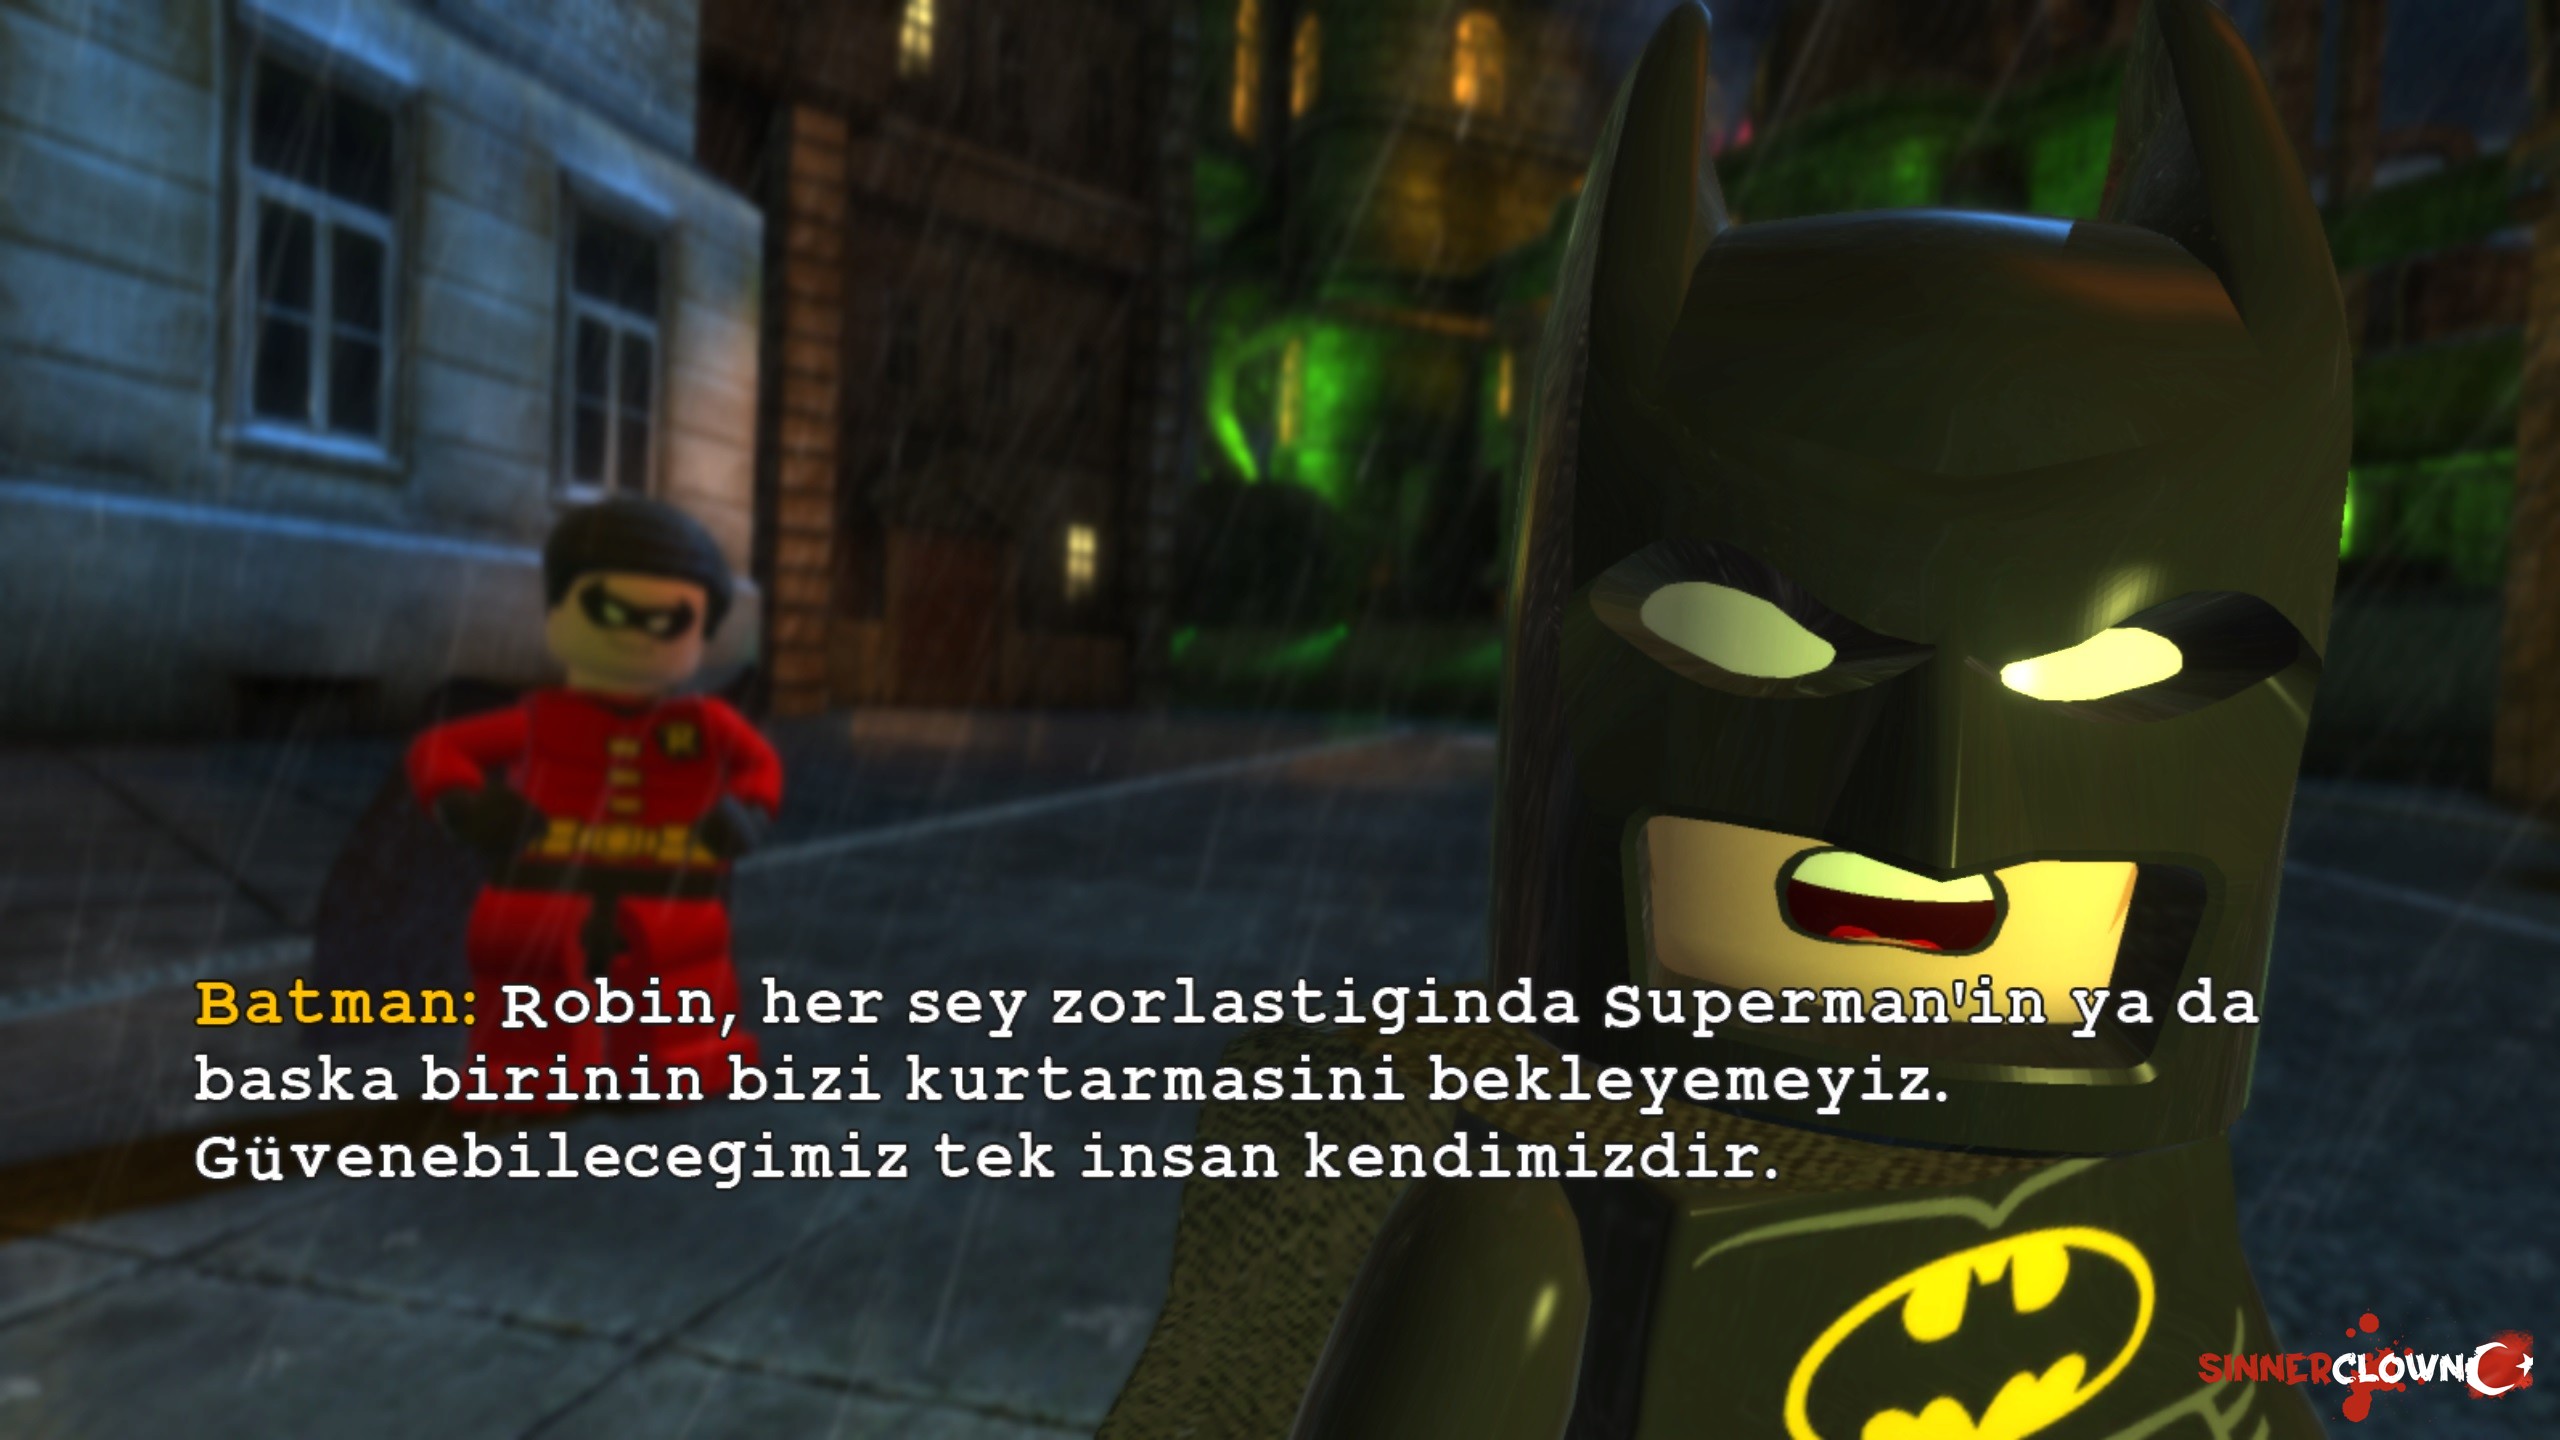 LEGO_Batman2_11.jpg